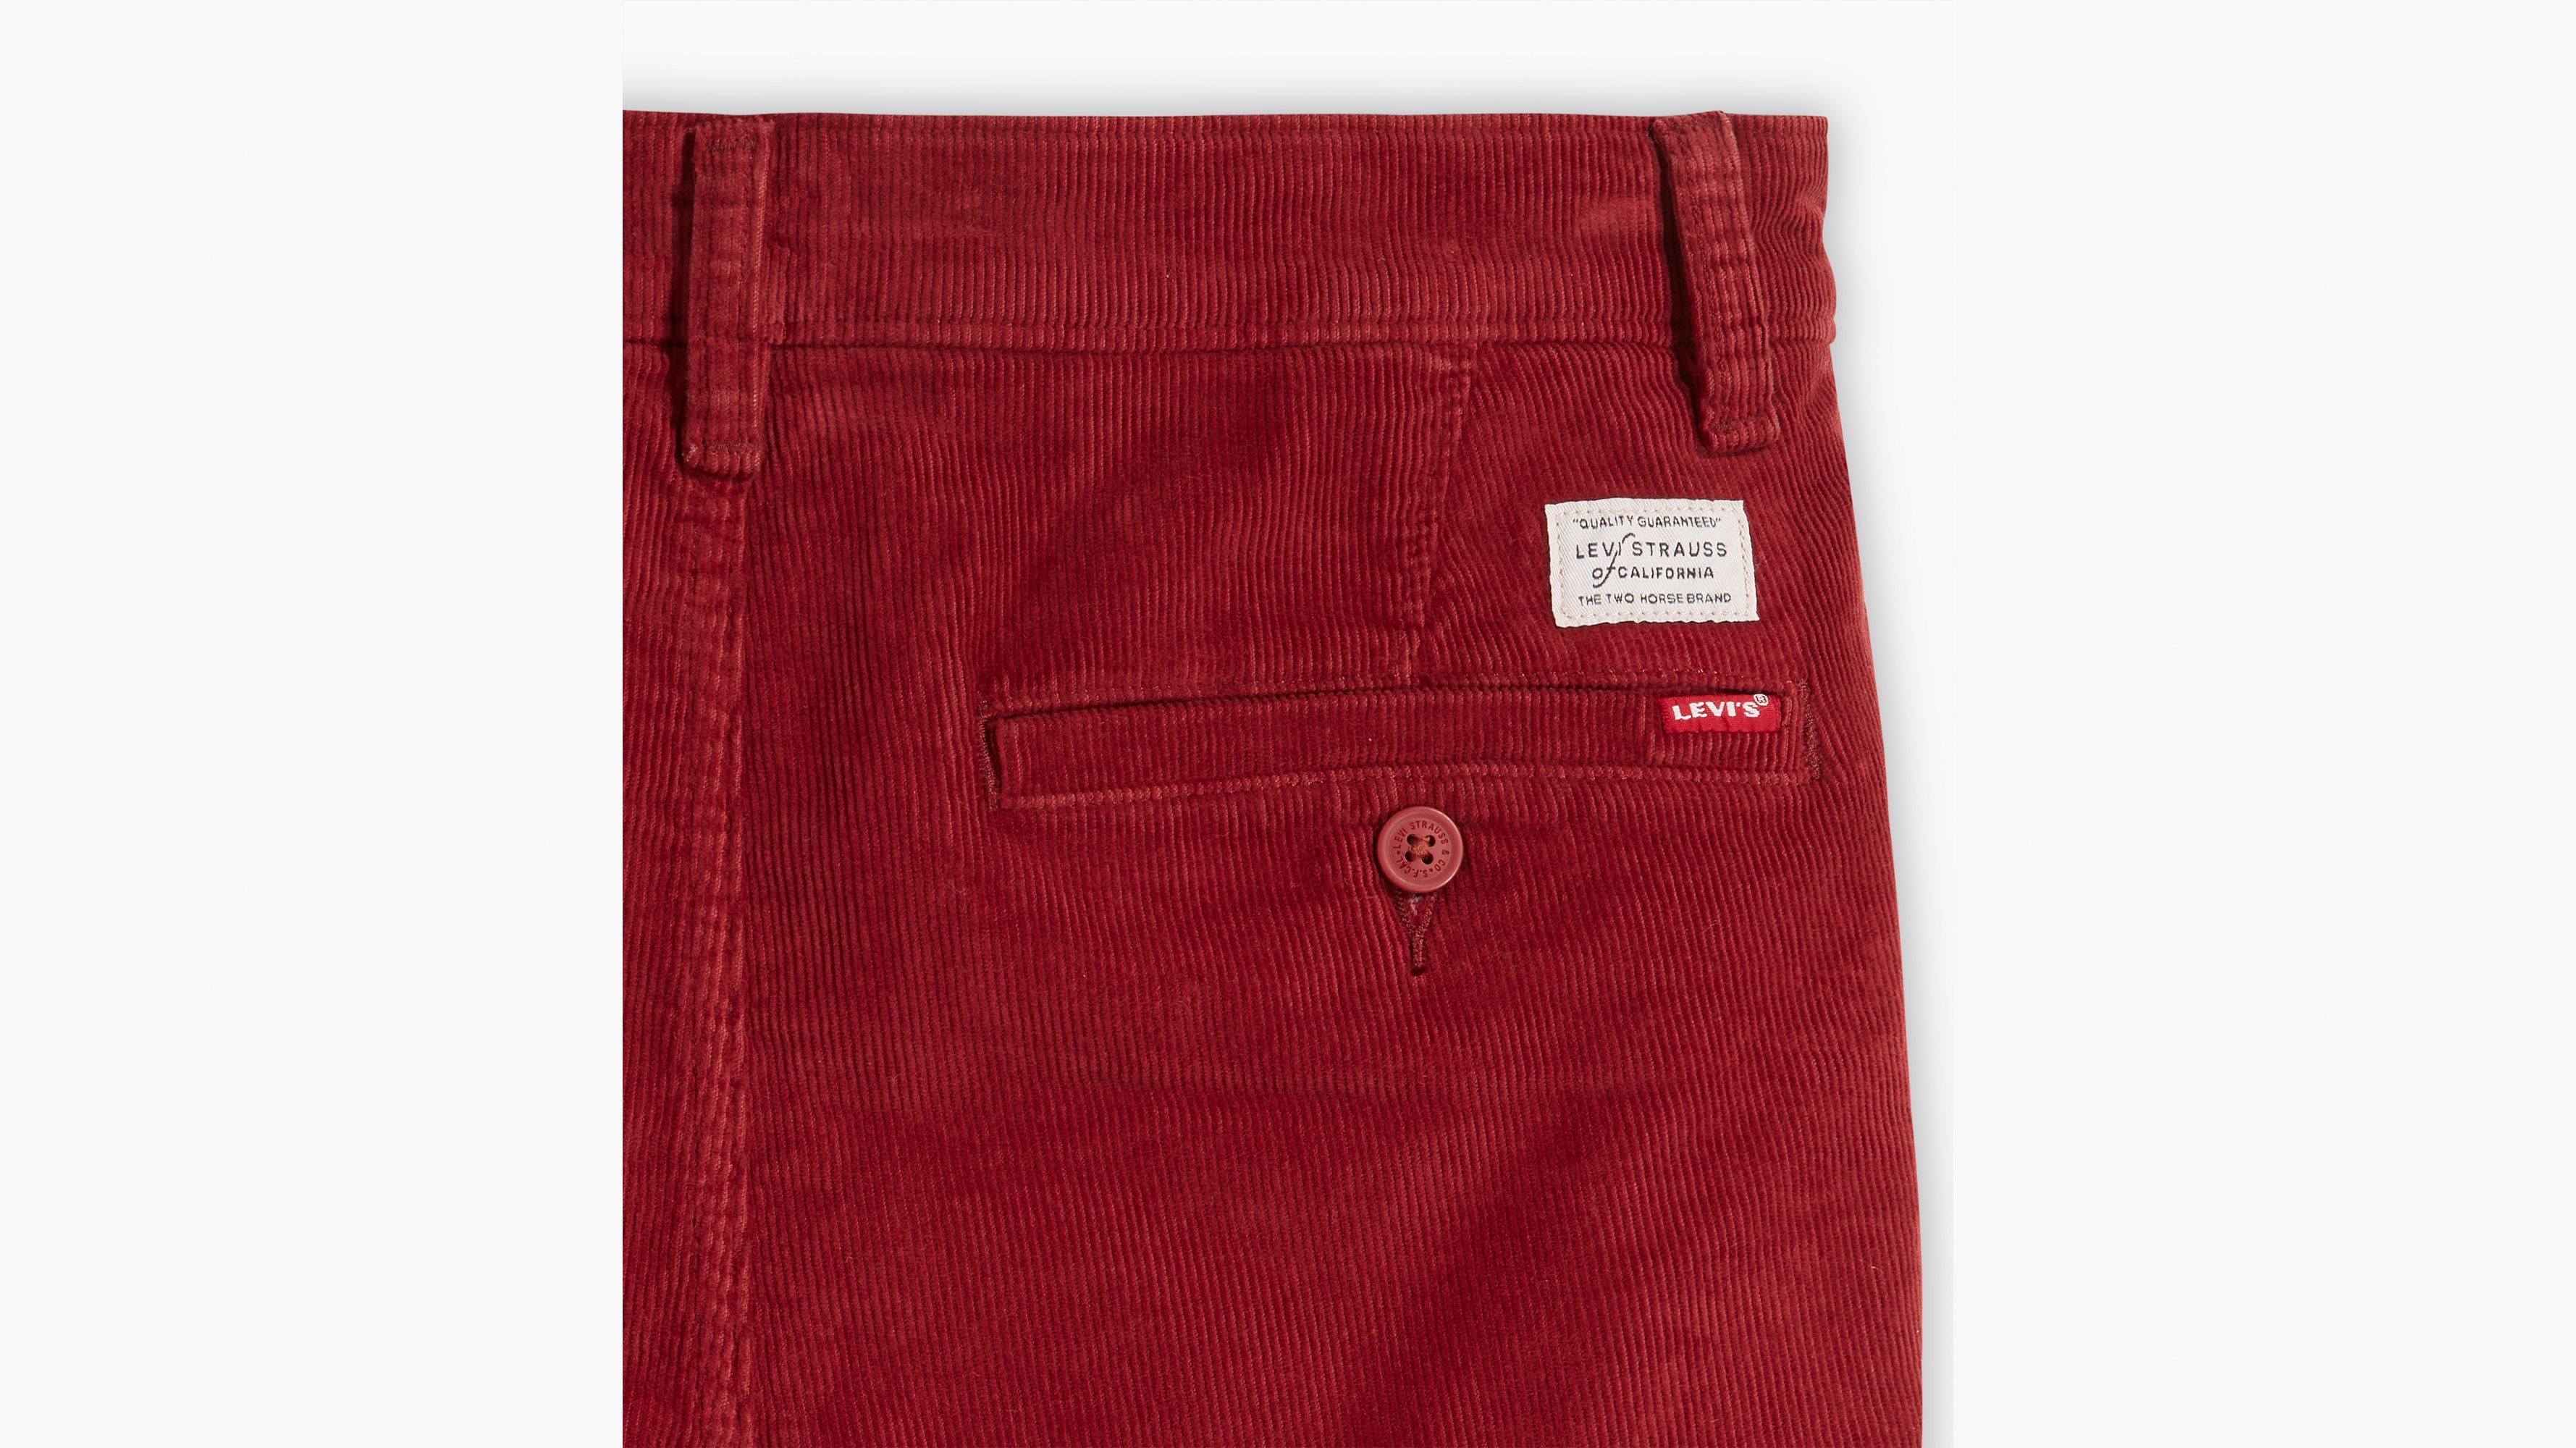 Red Corduroy Pants – Shop Awni